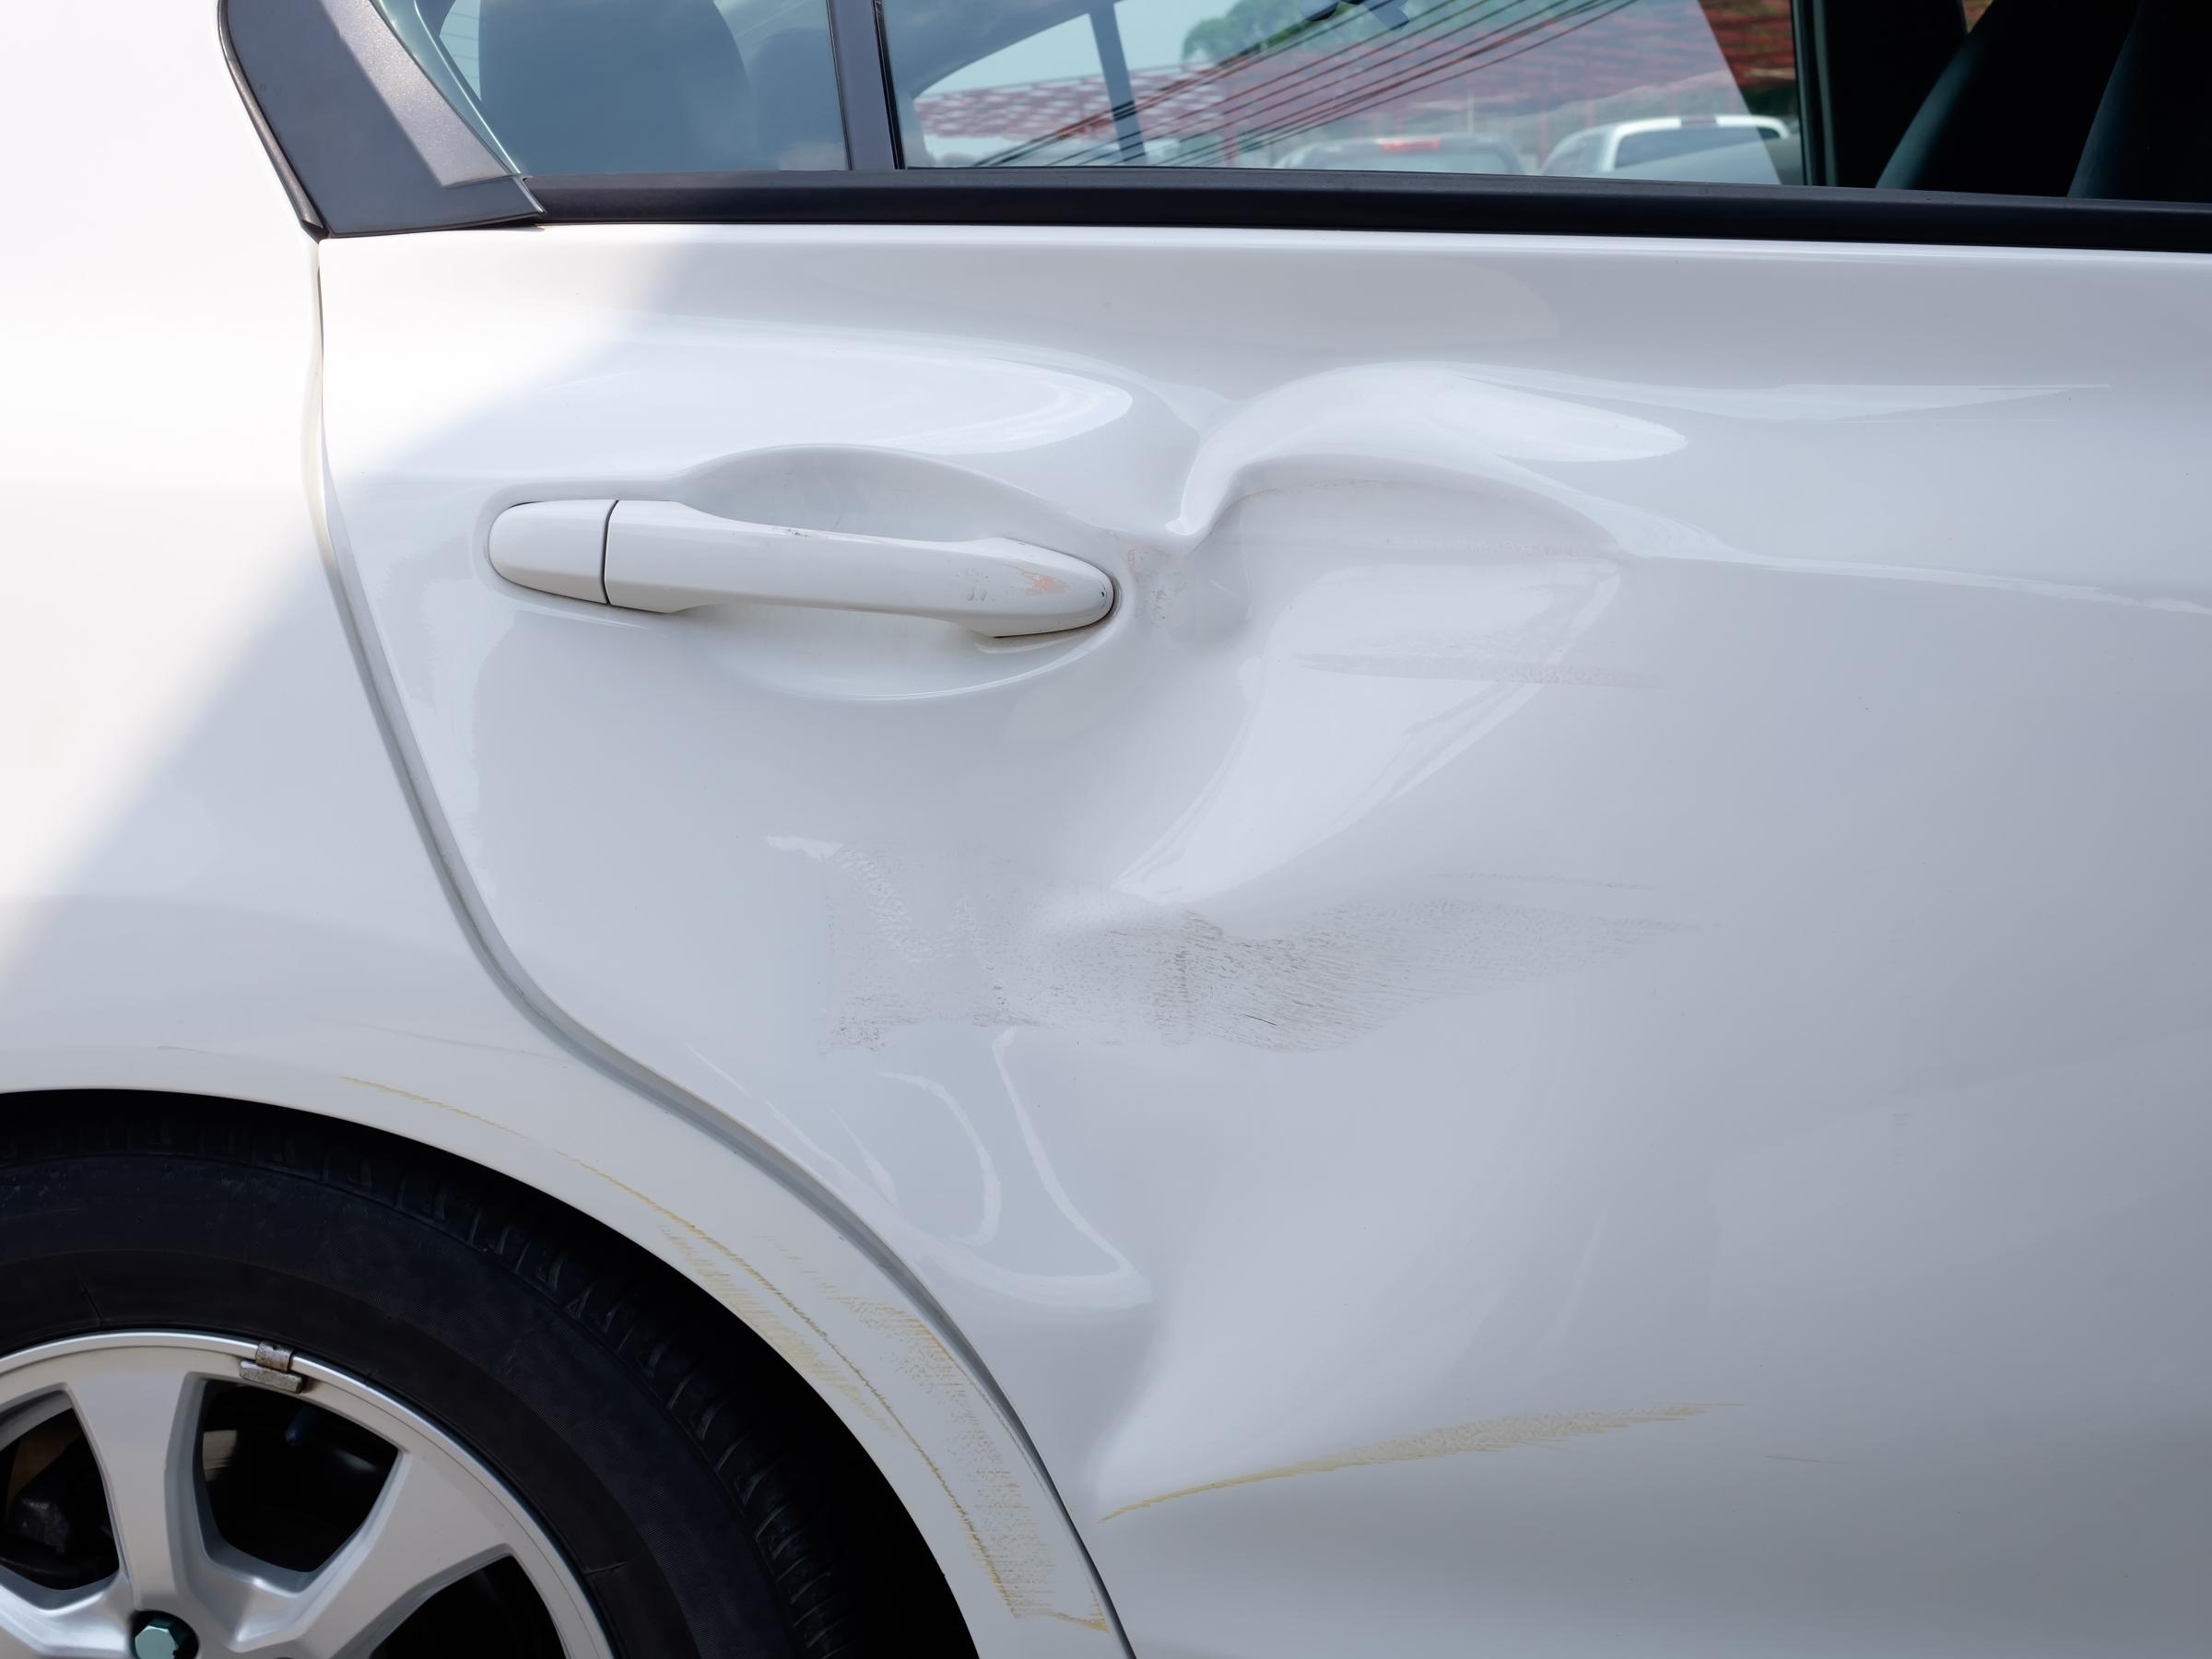 Bilforsikring få dækket skader på bilen